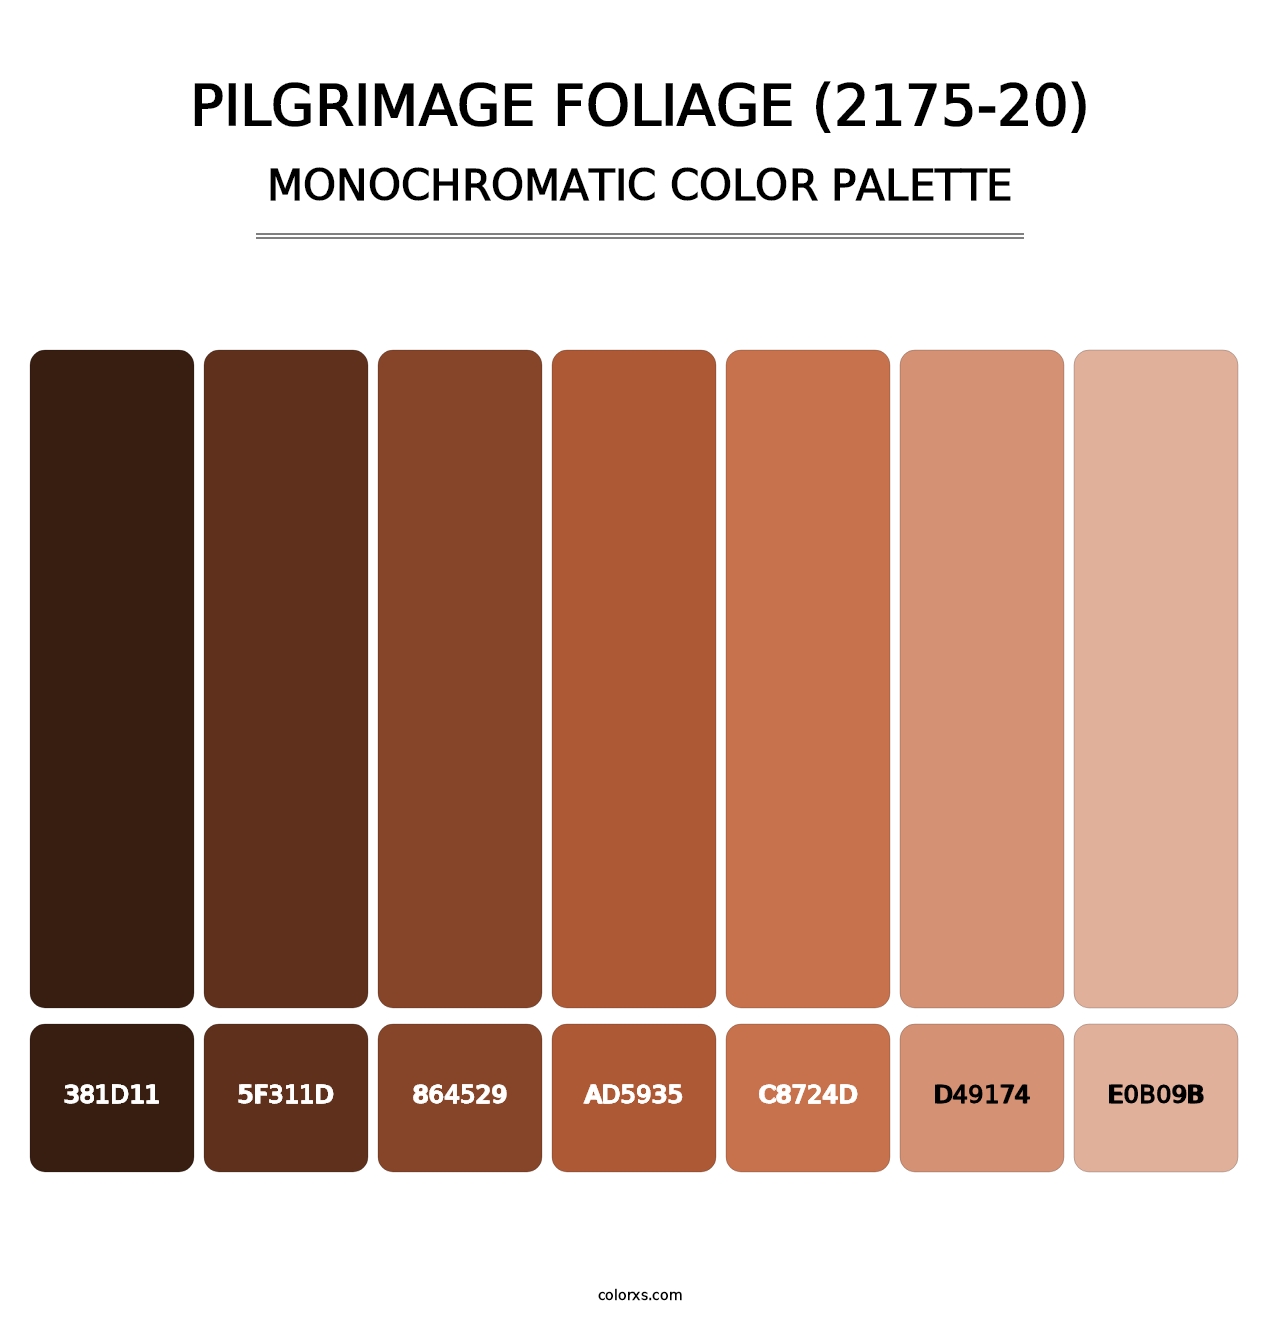 Pilgrimage Foliage (2175-20) - Monochromatic Color Palette